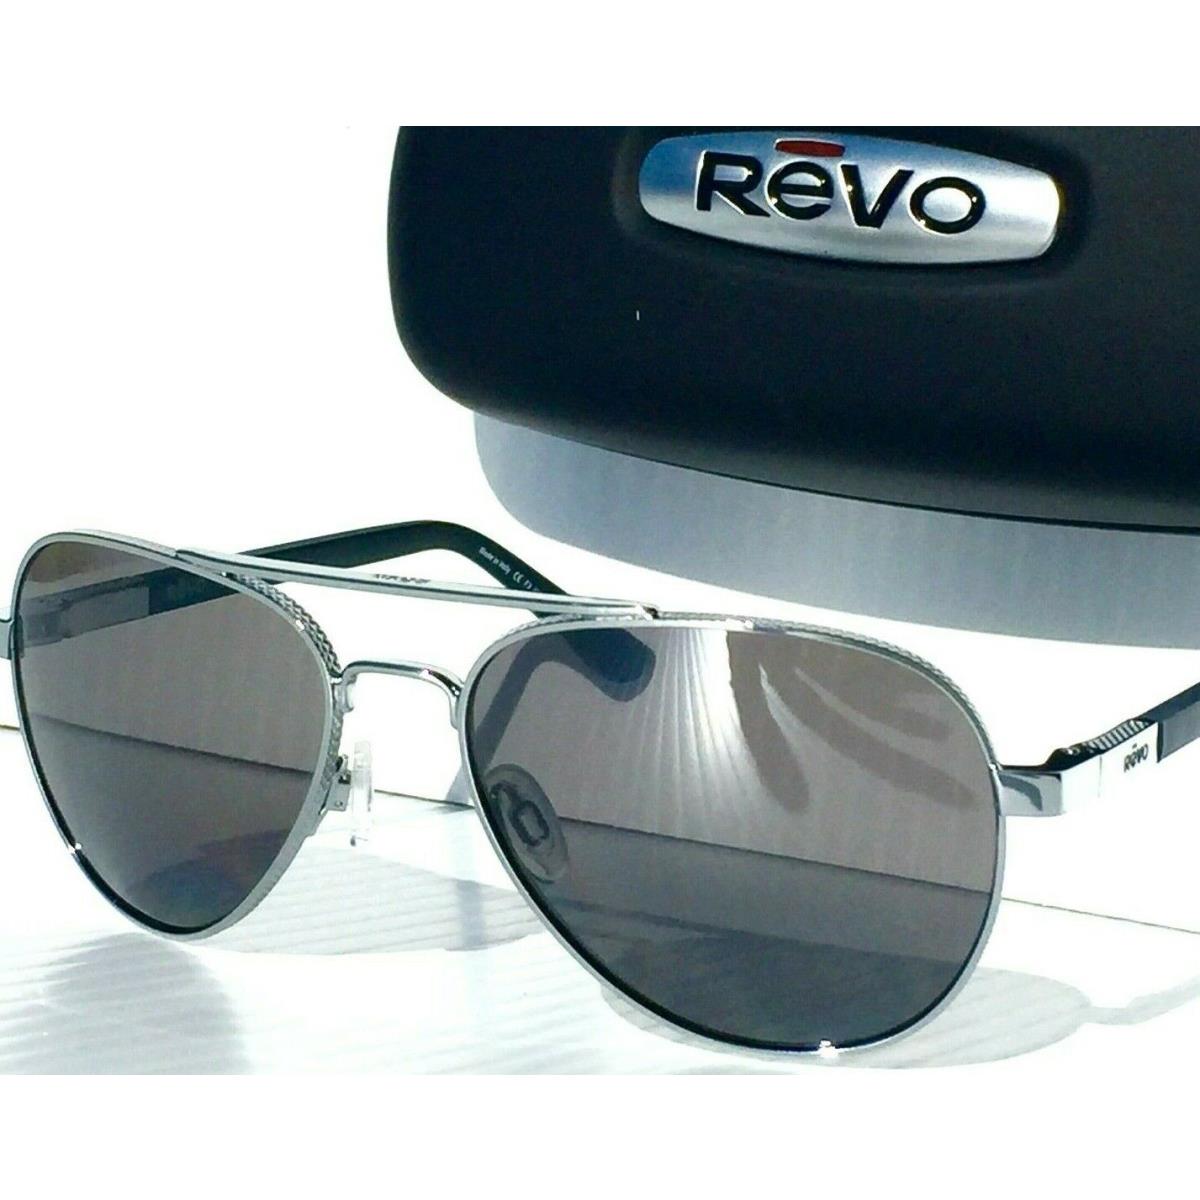 Revo sunglasses Raconteur - Chrome Frame, Graphite Grey Polarized Lens